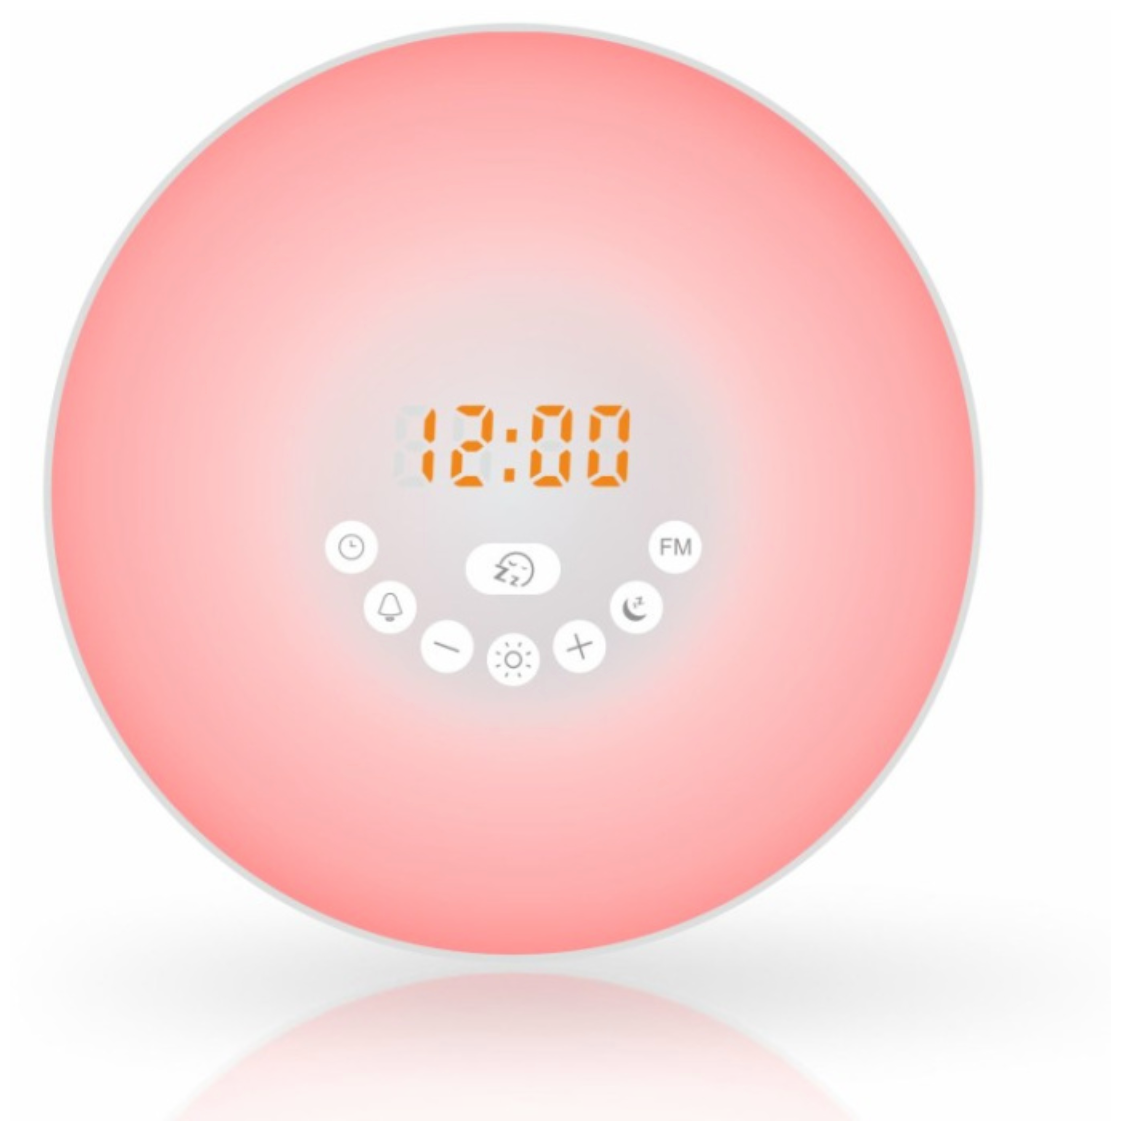 Световой радио будильник ночник с имитацией рассвета и заката Чехол. ру A1300-612 Чехол. ру для спокойного сна